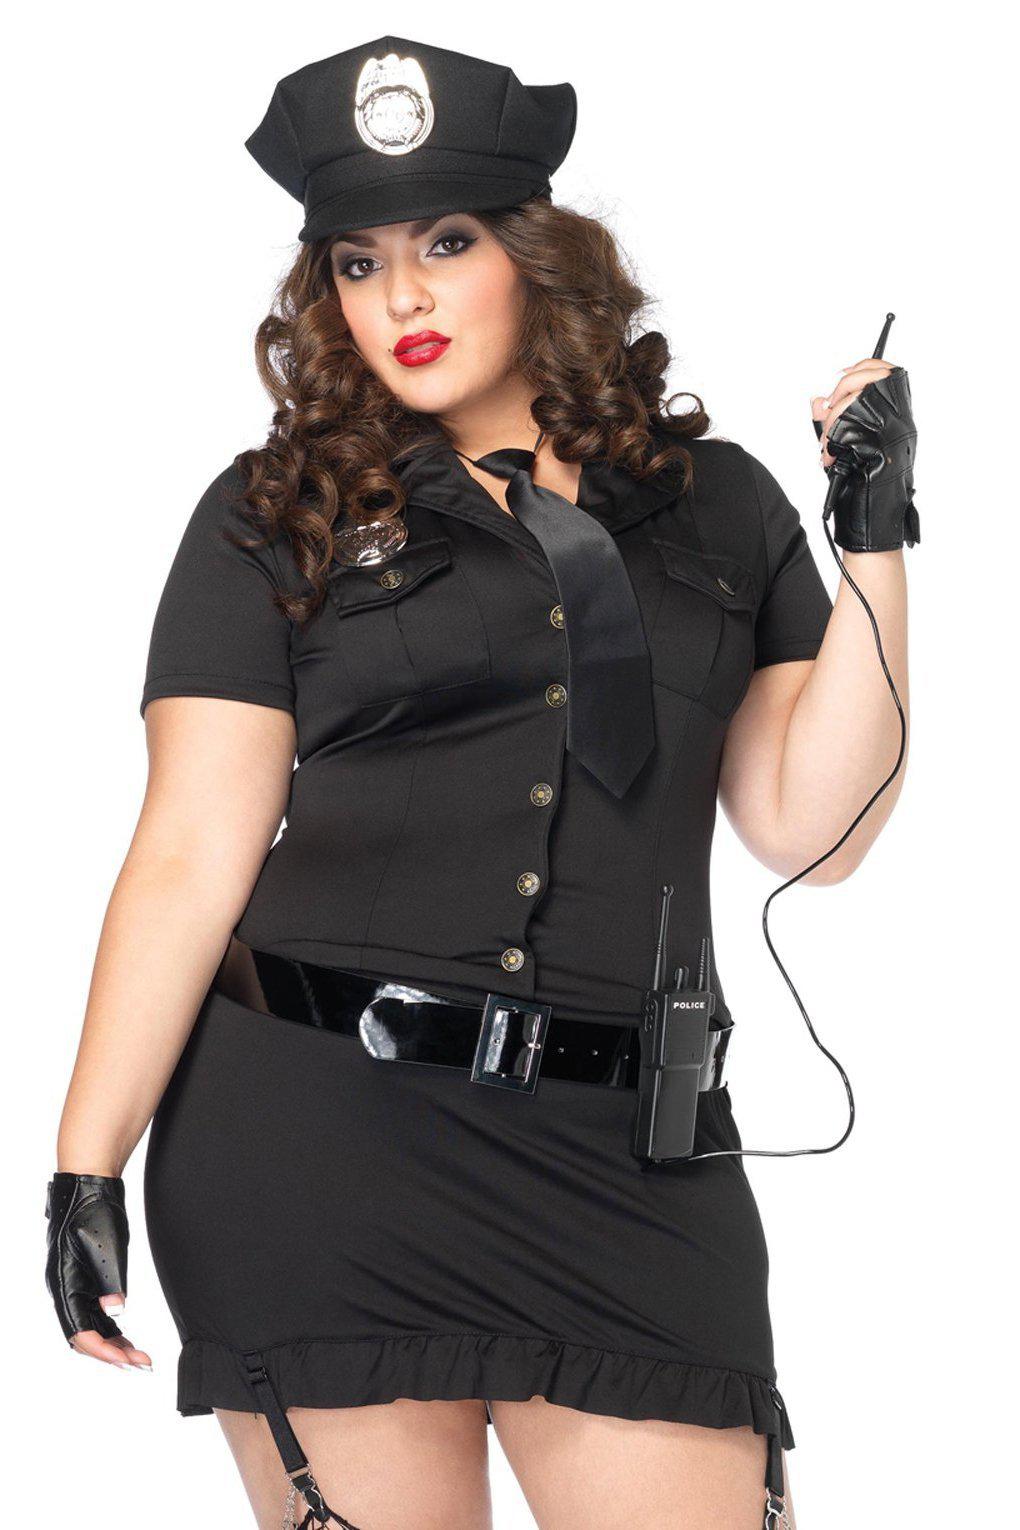 Plus Size Dirty Cop Costume-Cop Costumes-Leg Avenue-Black-1/2XL-SEXYSHOES.COM